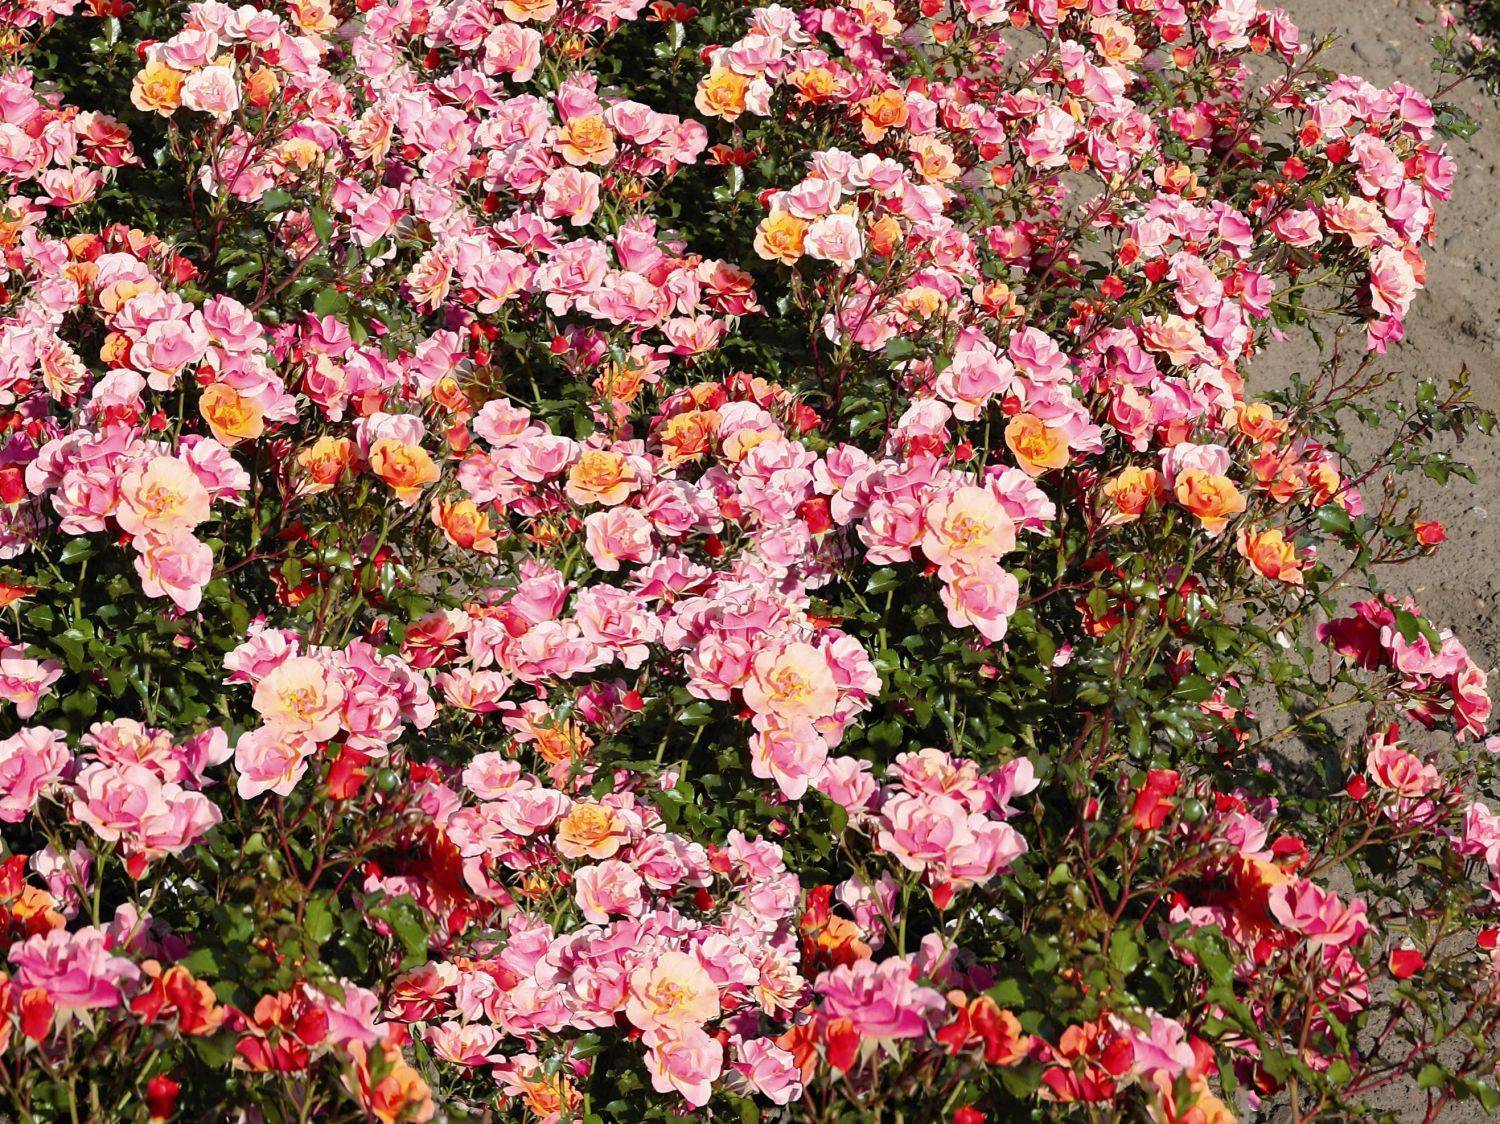 Штамбовая роза: описание и правила выращивания